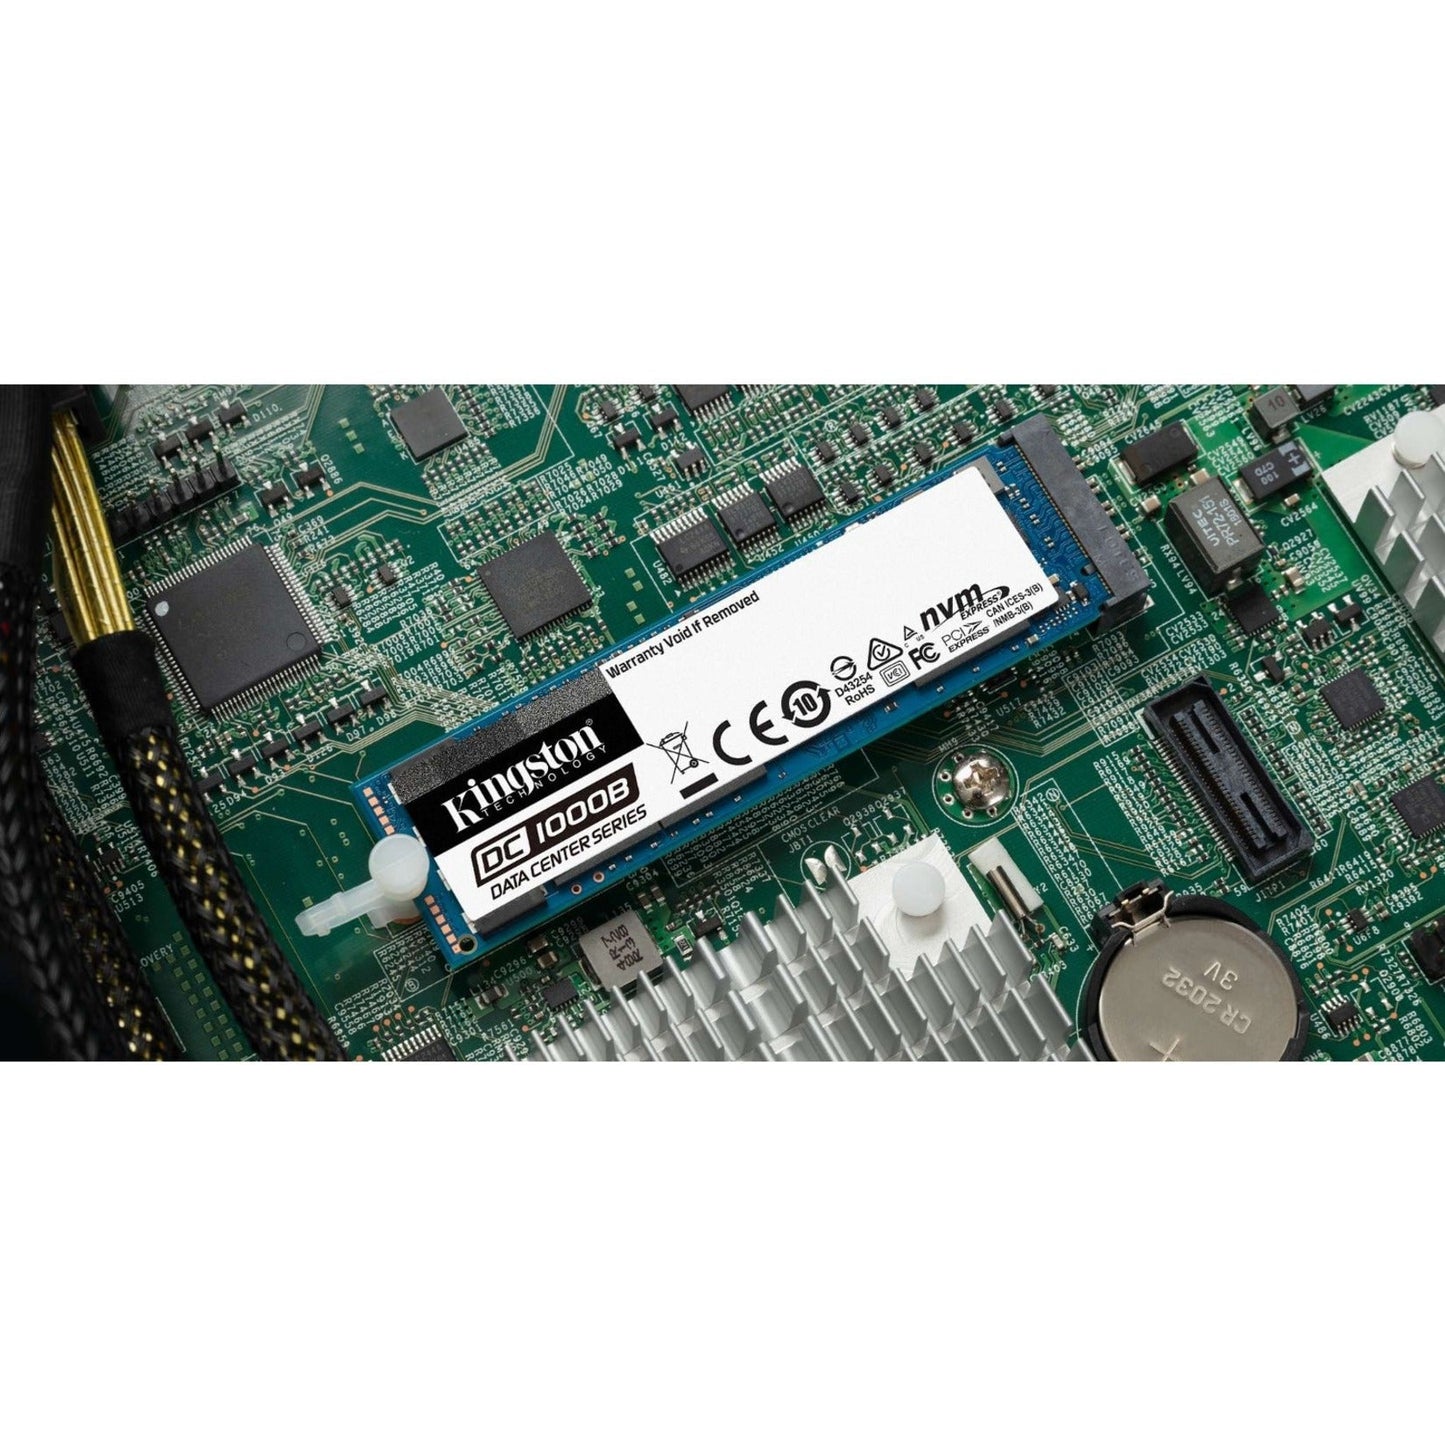 Kingston DC1000B 480 GB Solid State Drive - M.2 2280 Internal - PCI Express NVMe (PCI Express NVMe 3.0 x4)